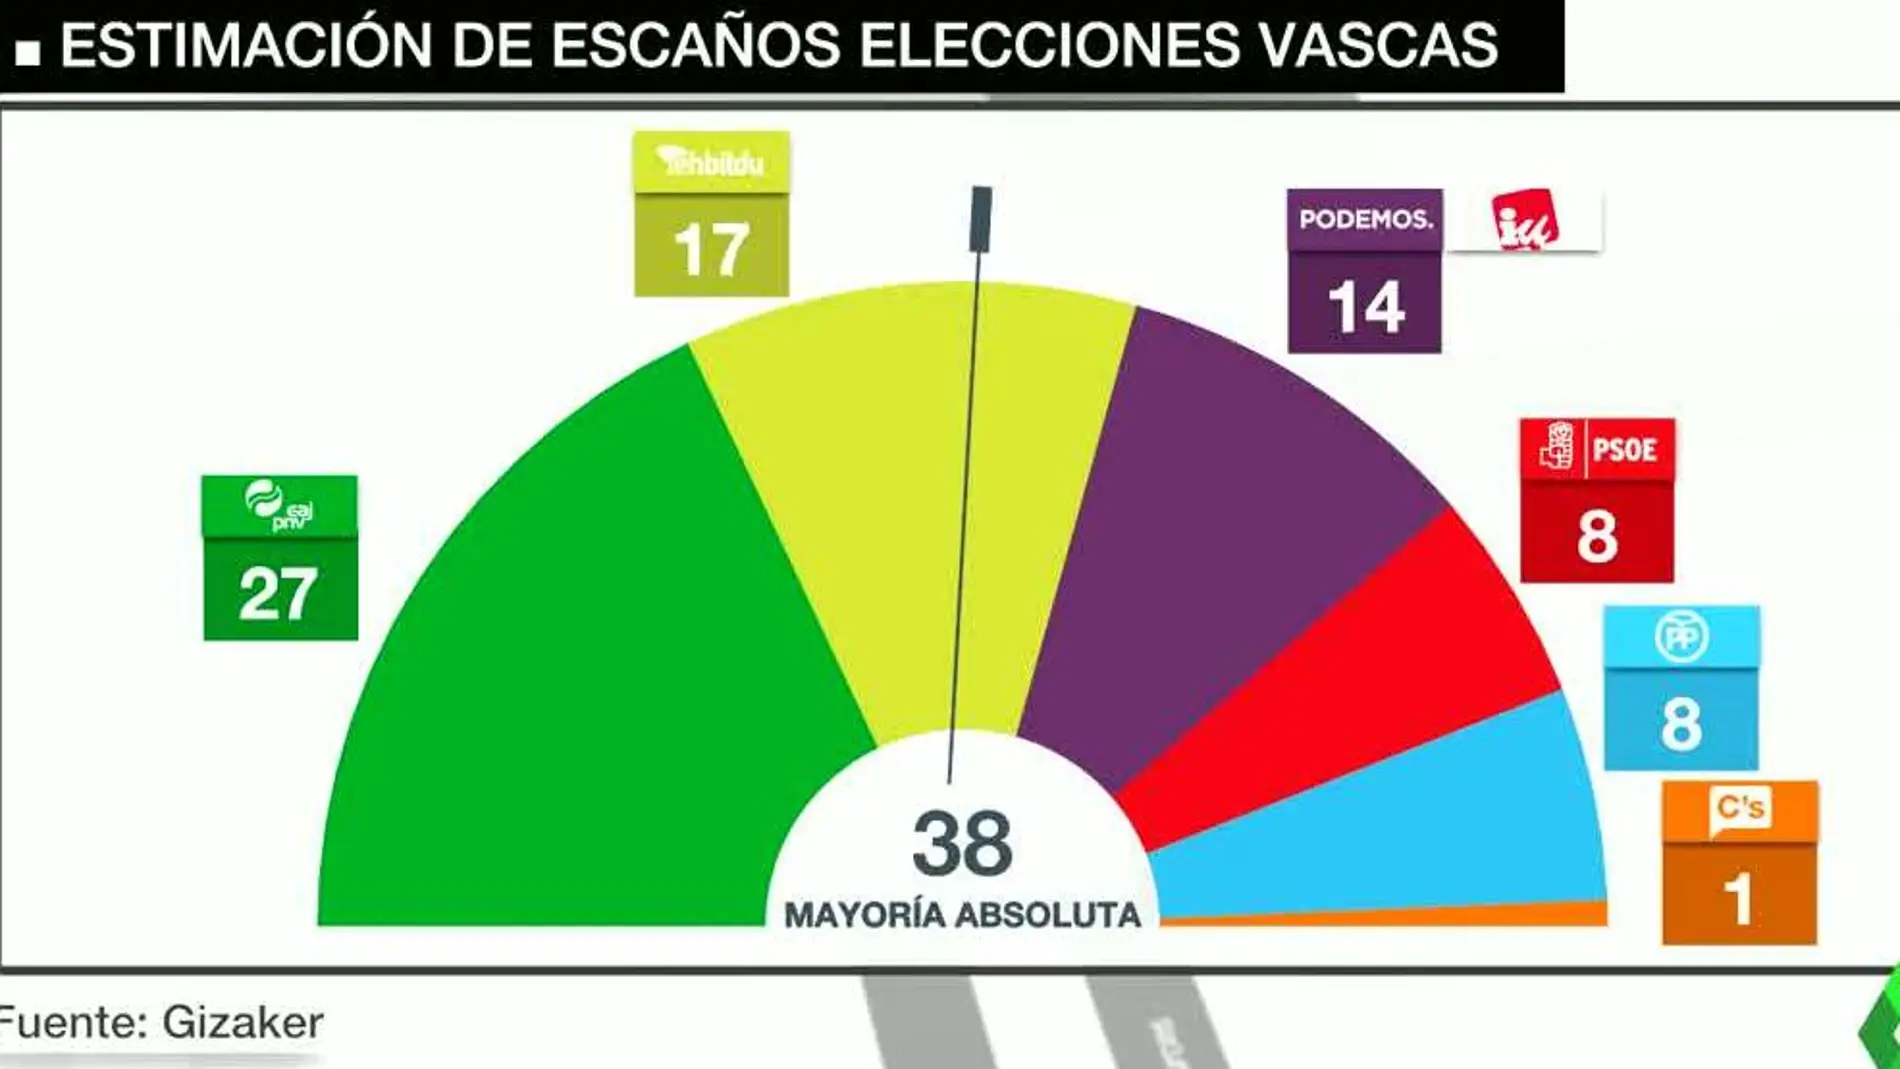 El PNV ganaría las elecciones vascas con 27 escaños y EH Bildu adelantaría a Podemos